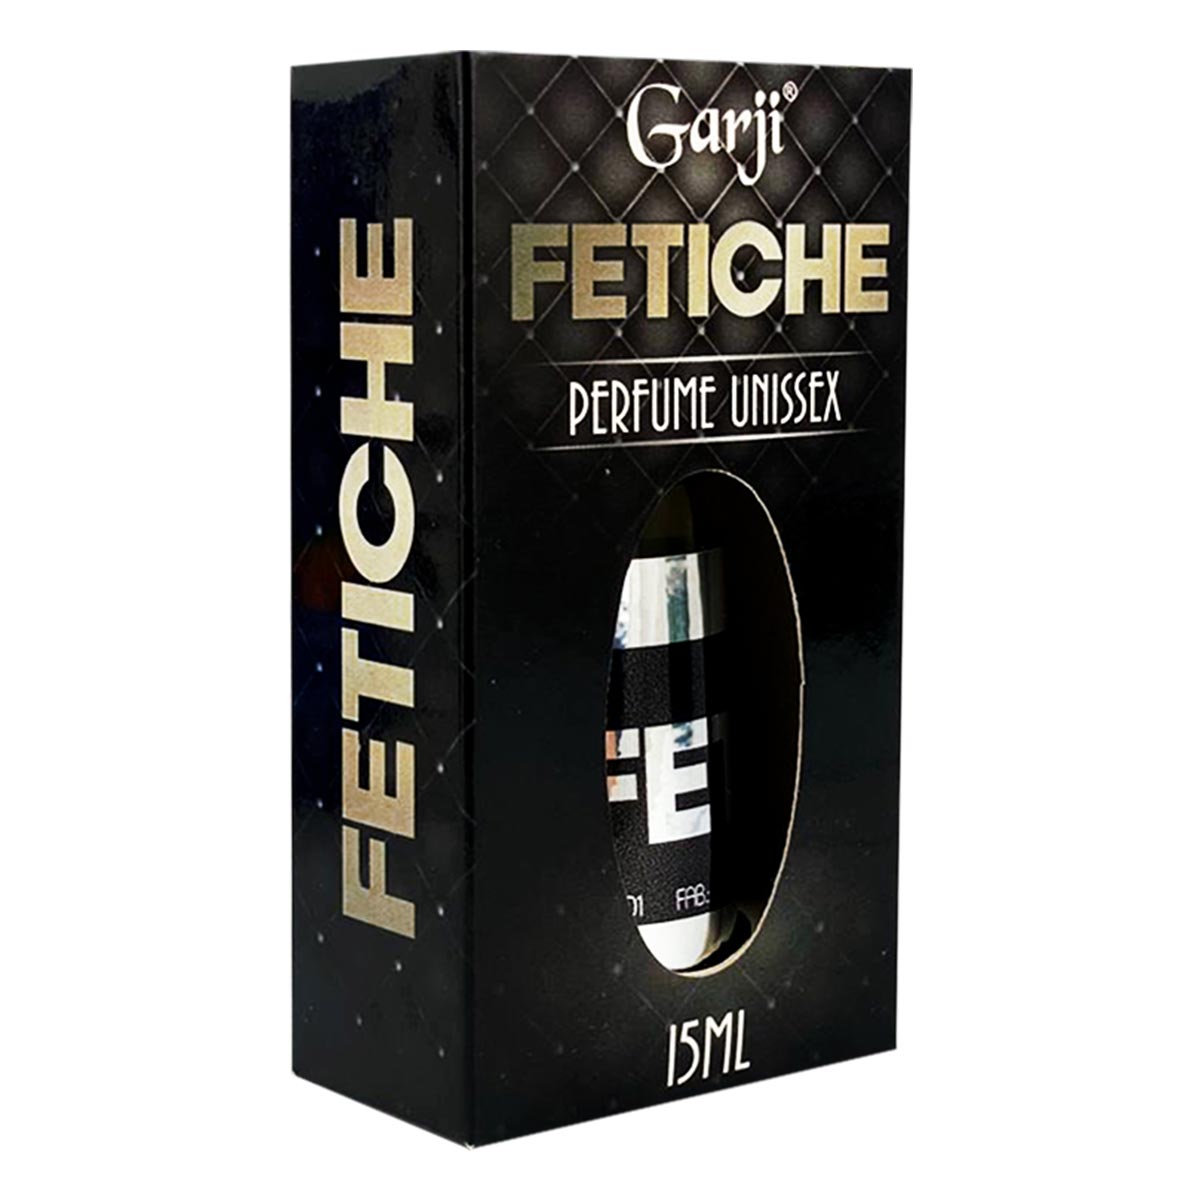 Fetiche Perfume Afrodisiaco Unissex 15ml Garji